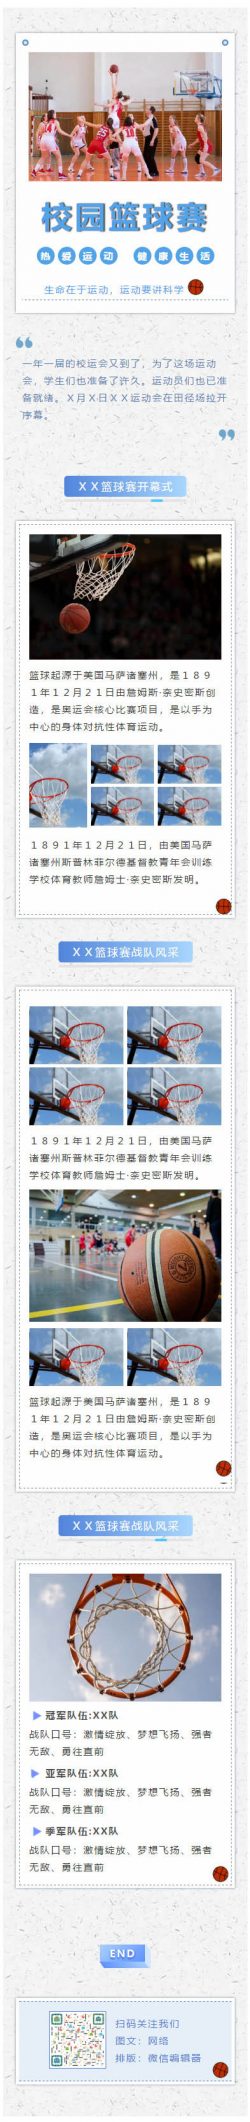 校园篮球赛学校大学运动会校运会教育素材微信模板推送图文章